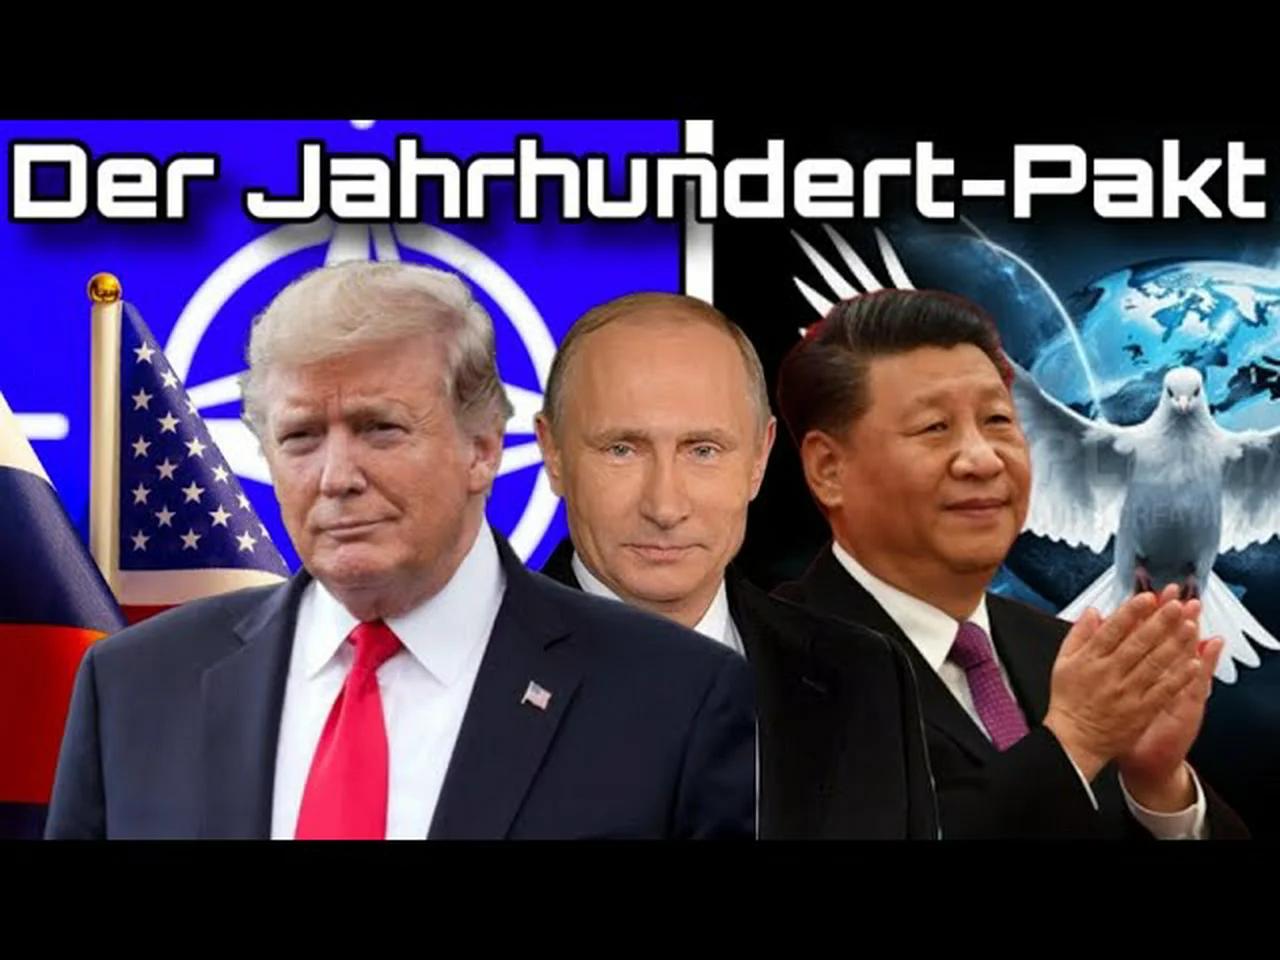 ⁣Der Jahrhundert-Pakt: Putin, Xi und Trump wollen Frieden schaffen